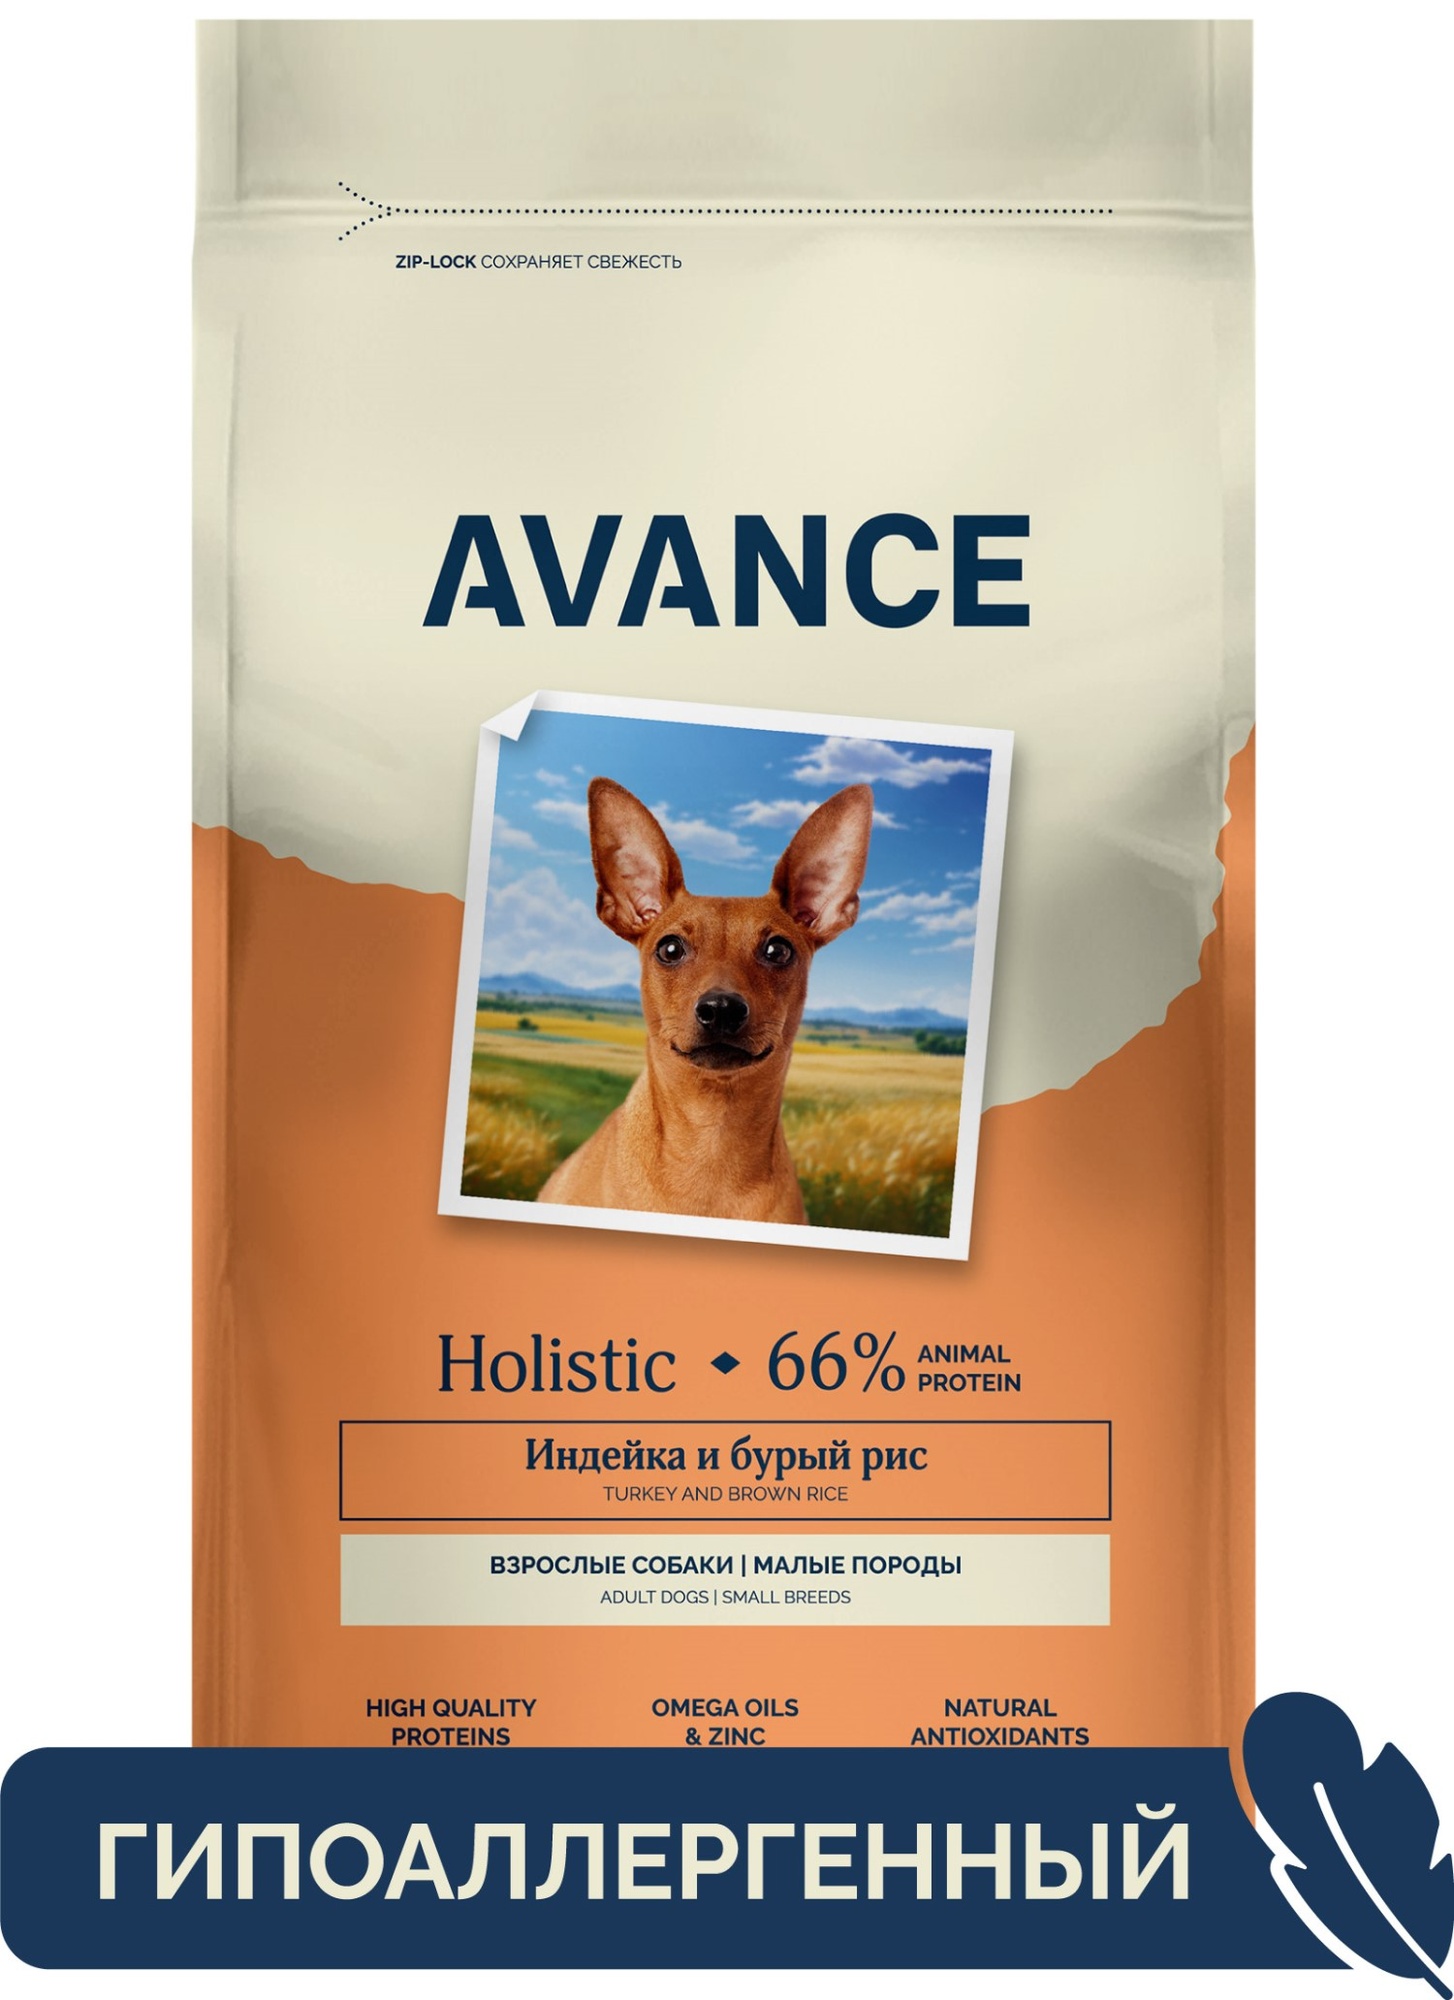 Сухой корм для собак AVANCE holistic, для малых пород, с индейкой и бурым рисом, 10 кг